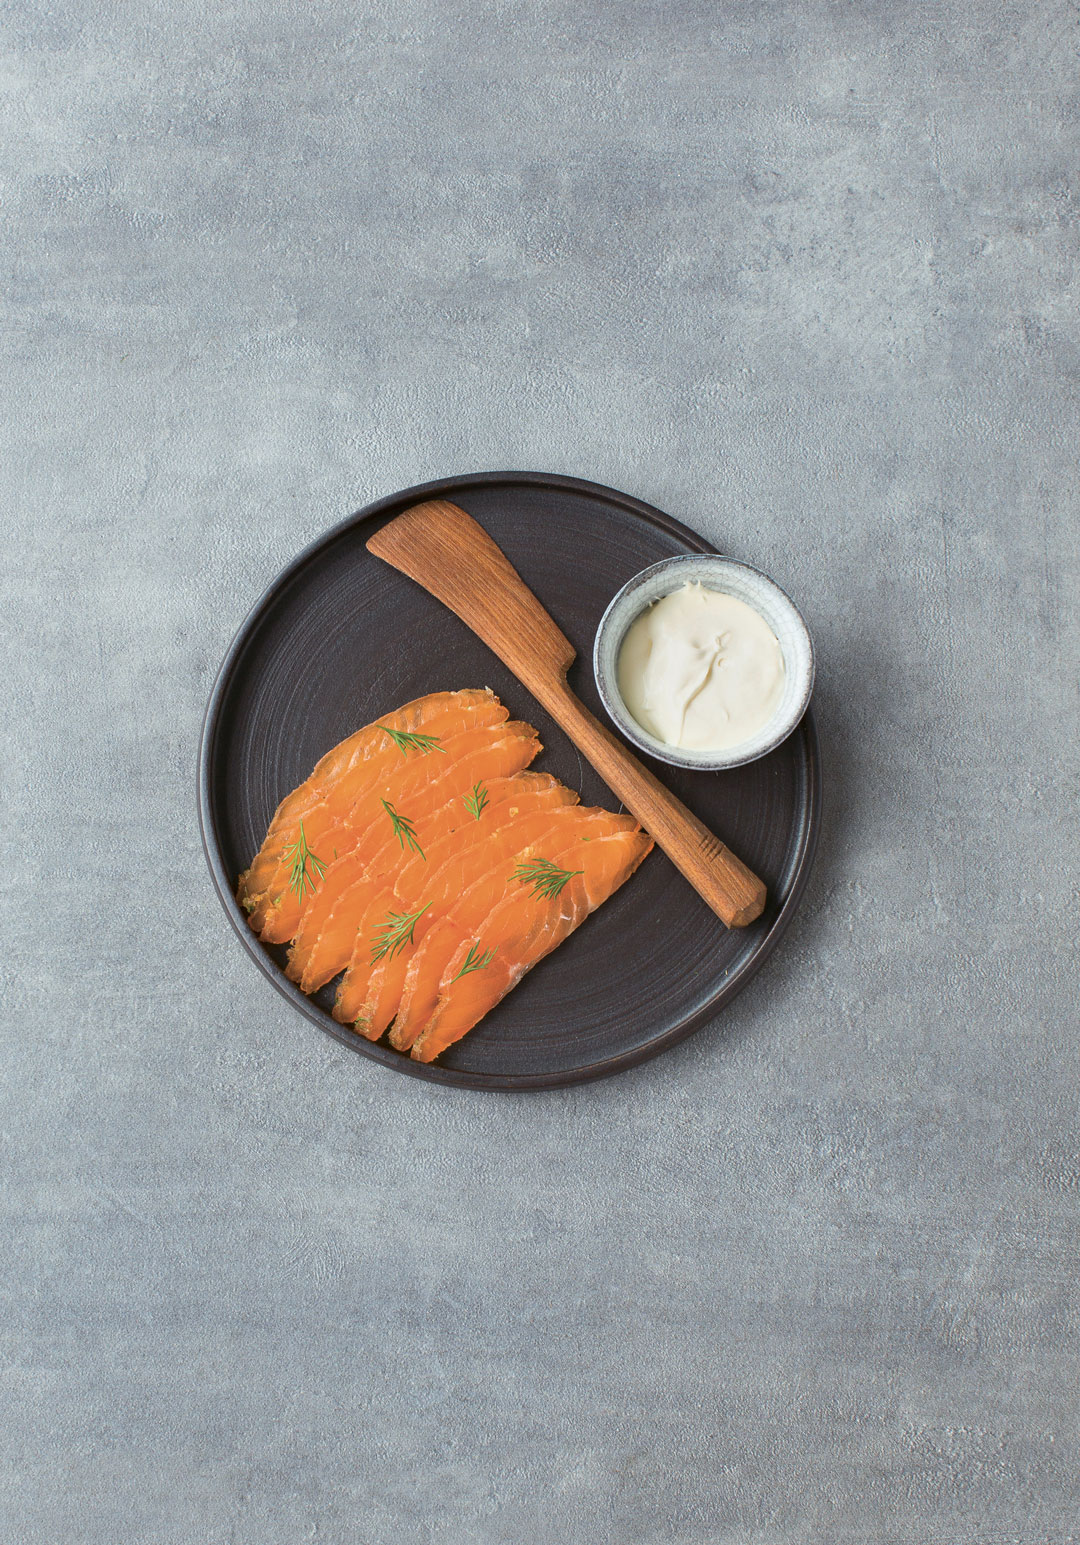 Salmon and horseradish